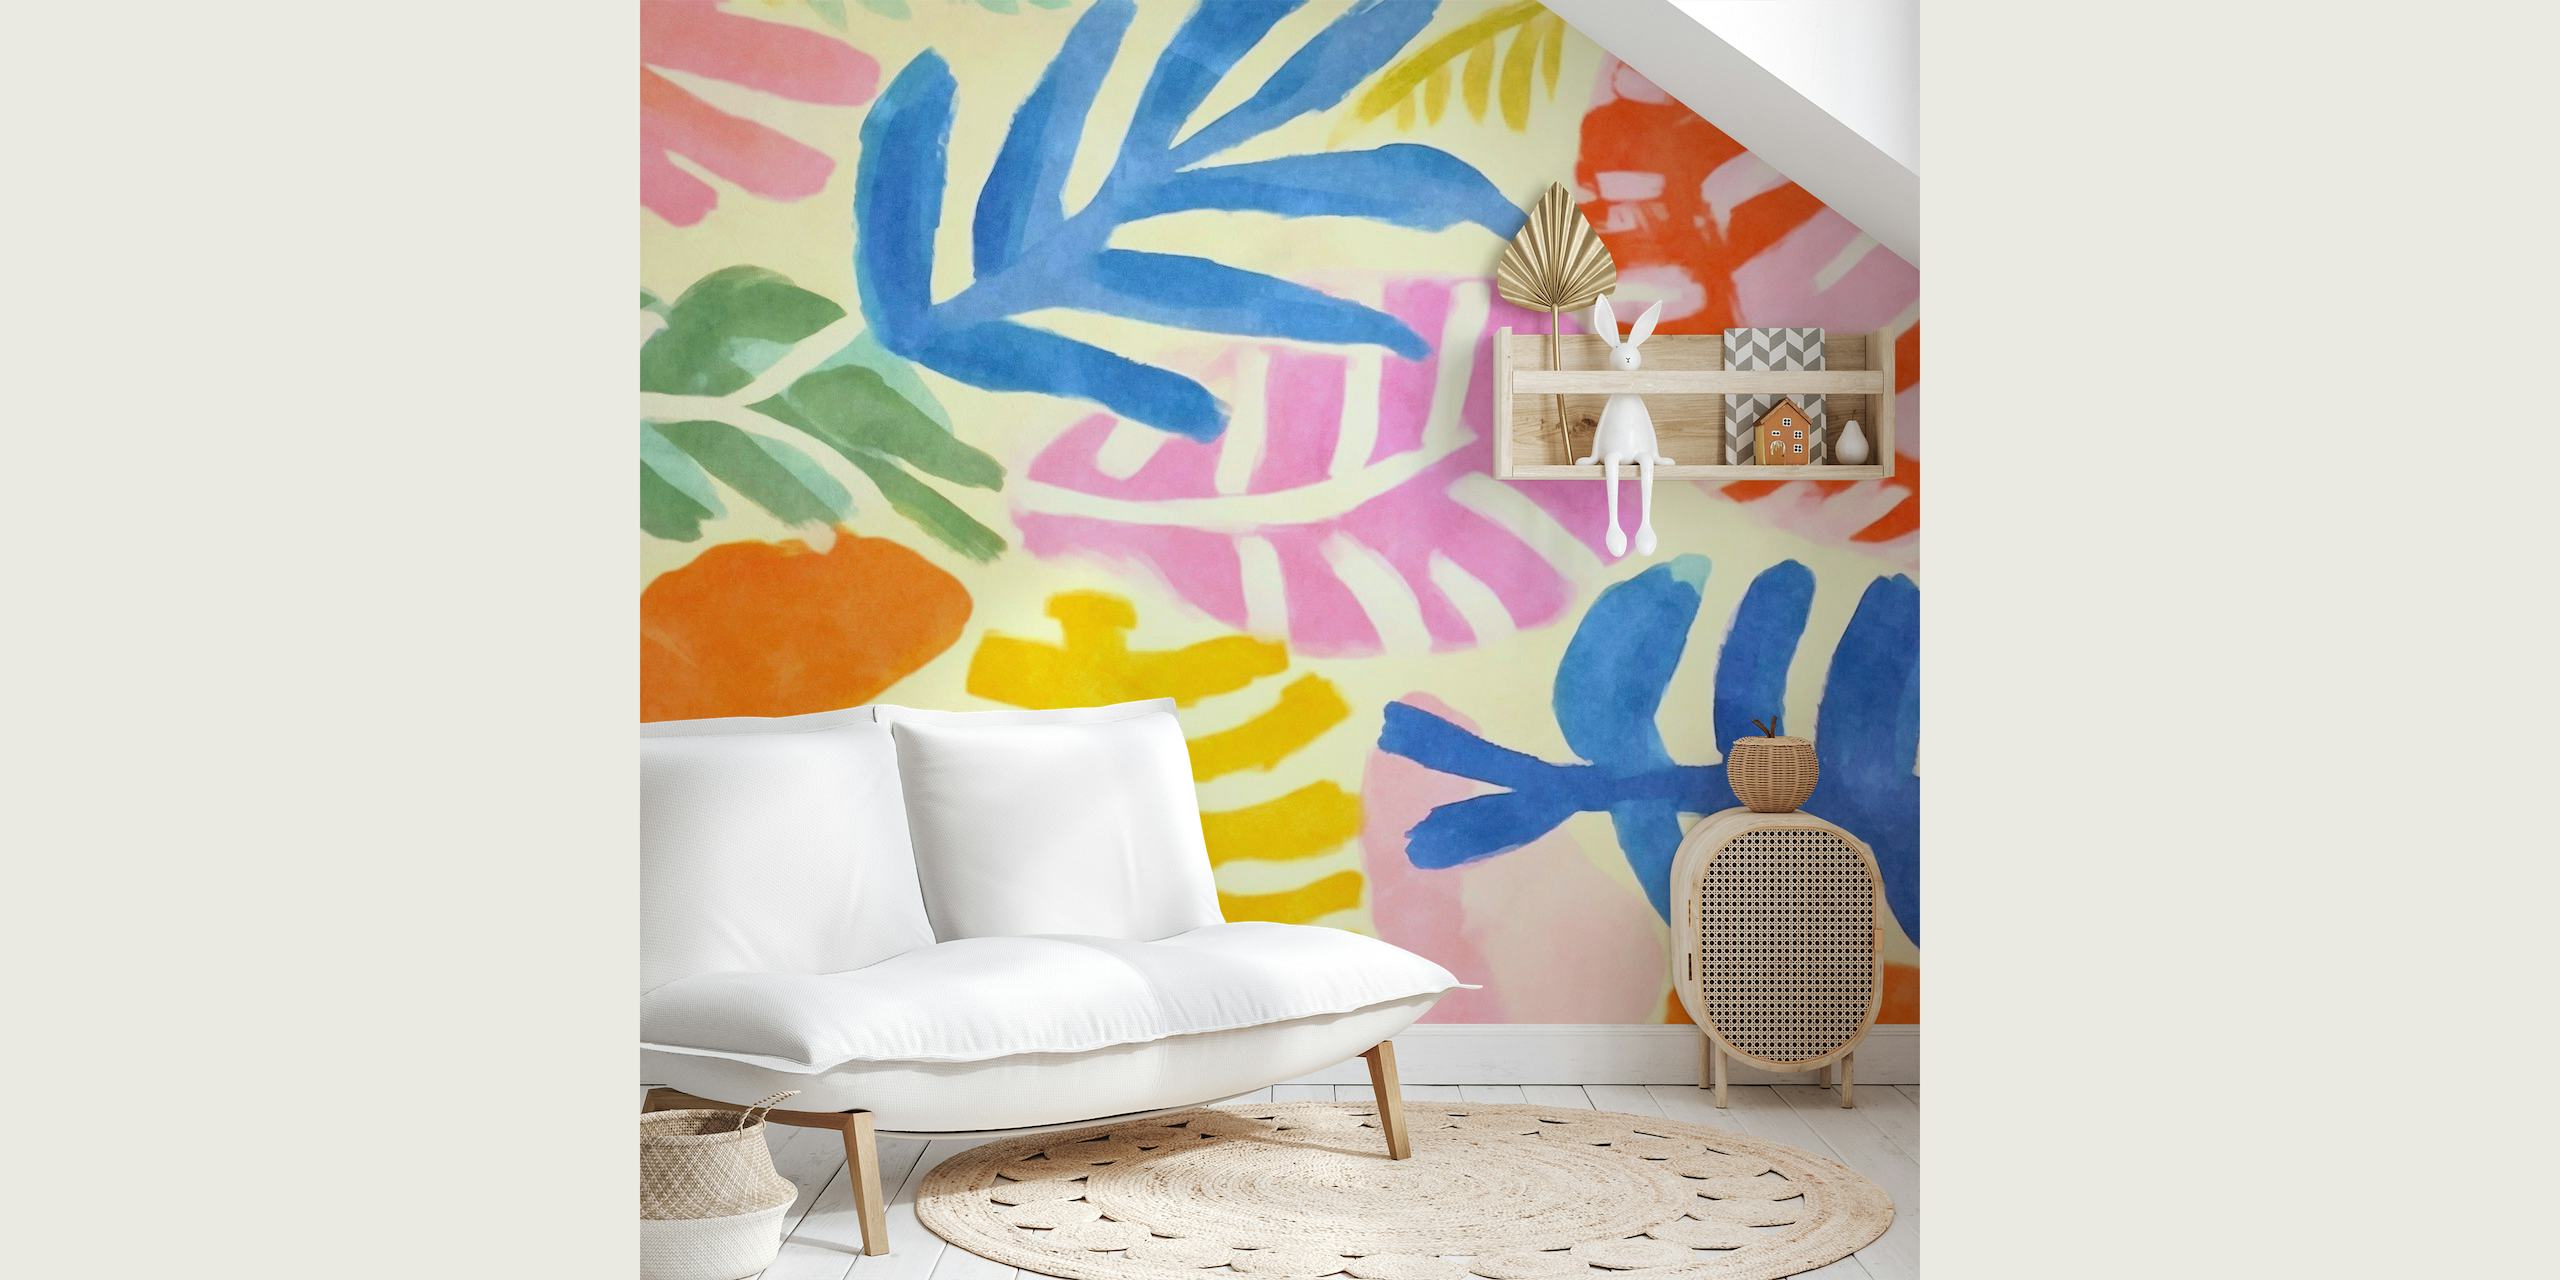 Colorato murale floreale astratto nello stile di Henri Matisse, con giocosi disegni ritagliati